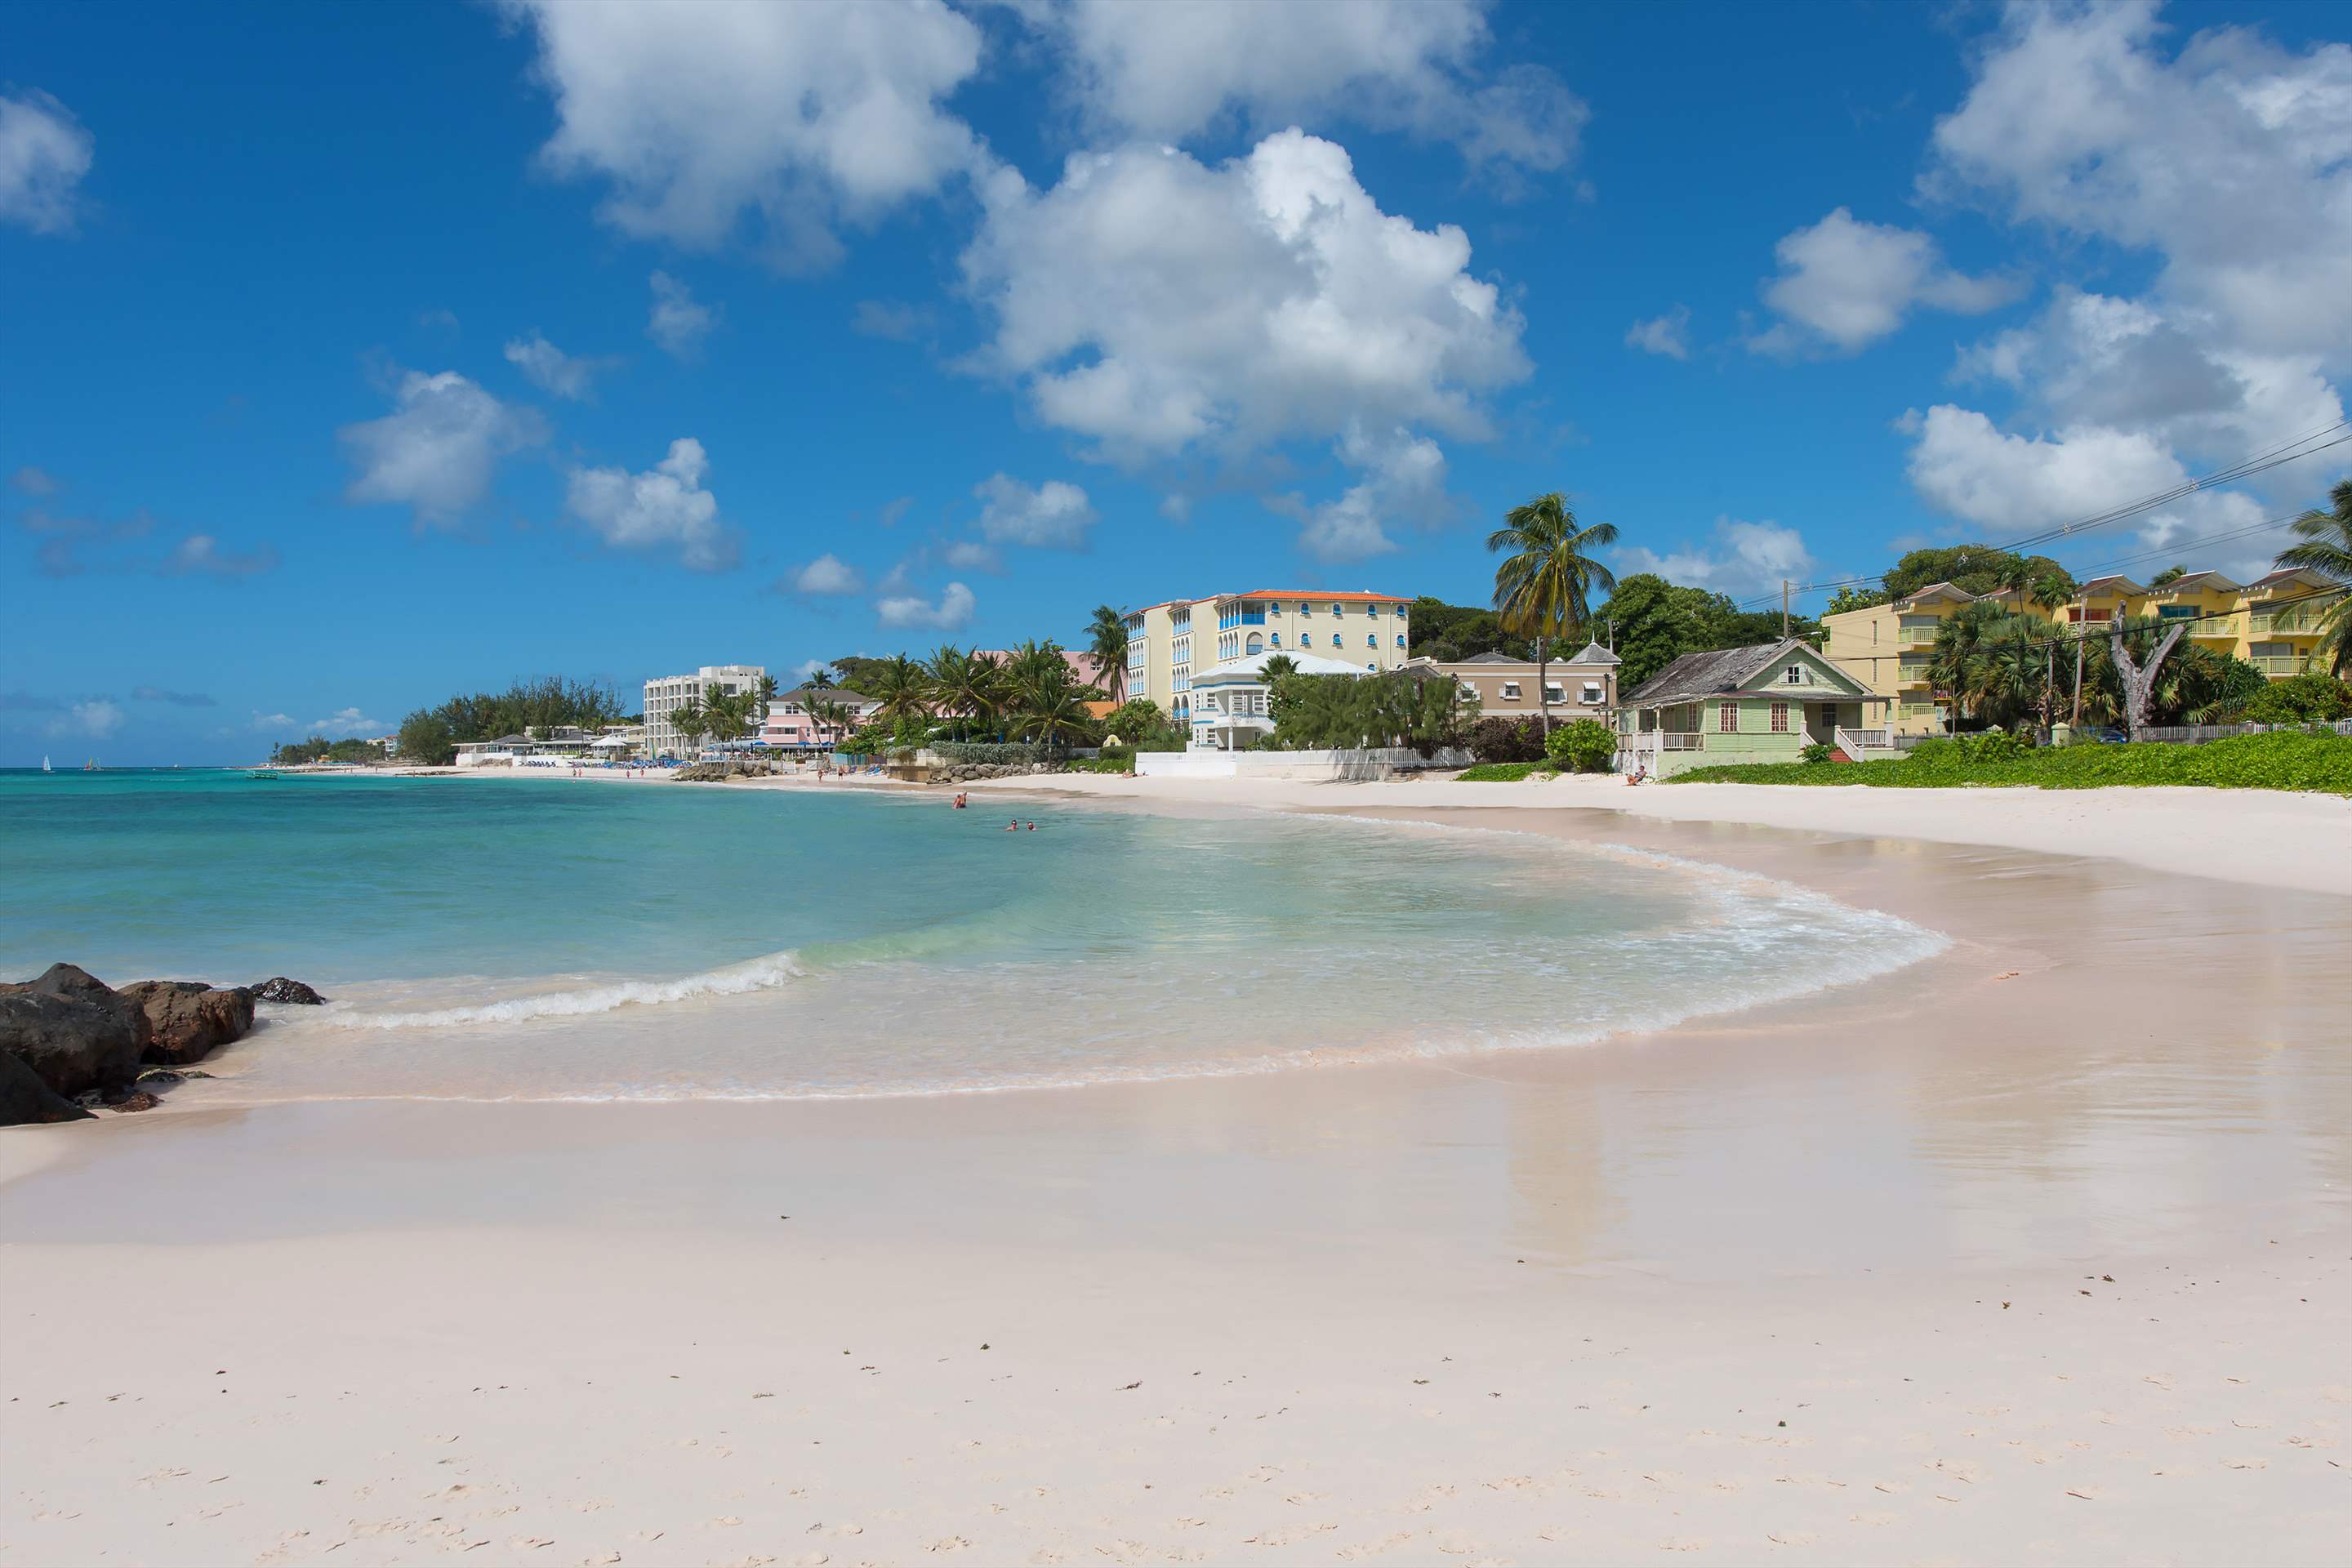 Maxwell Beach Villas 501, 2 bedroom, 2 bedroom villa in St. Lawrence Gap & South Coast, Barbados Photo #9